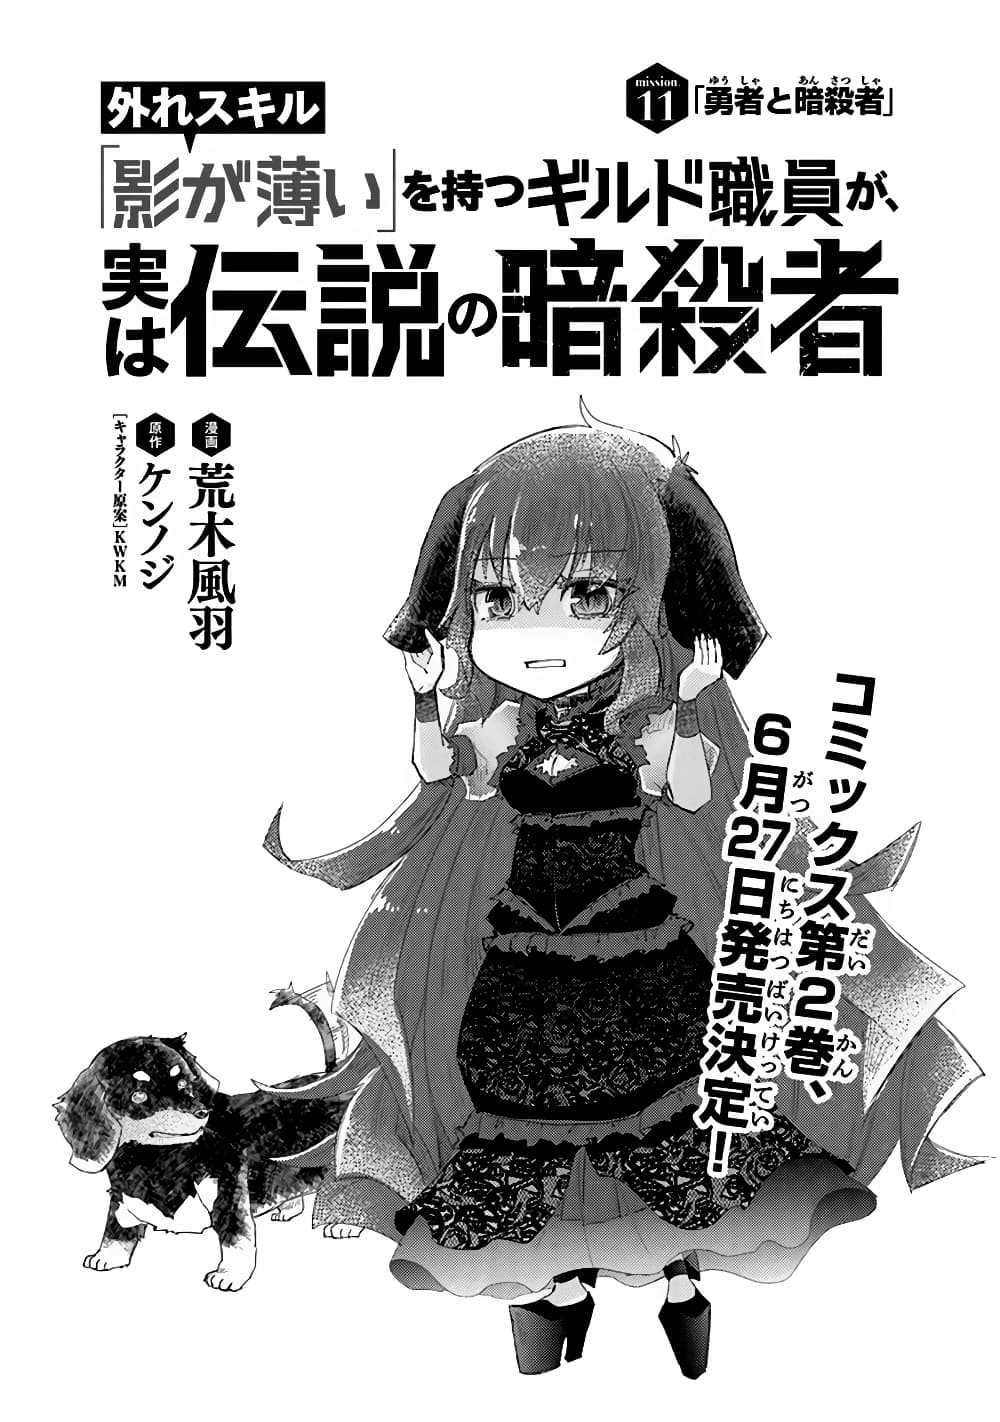 Hazure Skill “Kage ga Usui” o Motsu Guild Shokuin ga, Jitsuha Densetsu no Ansatsusha 11-11